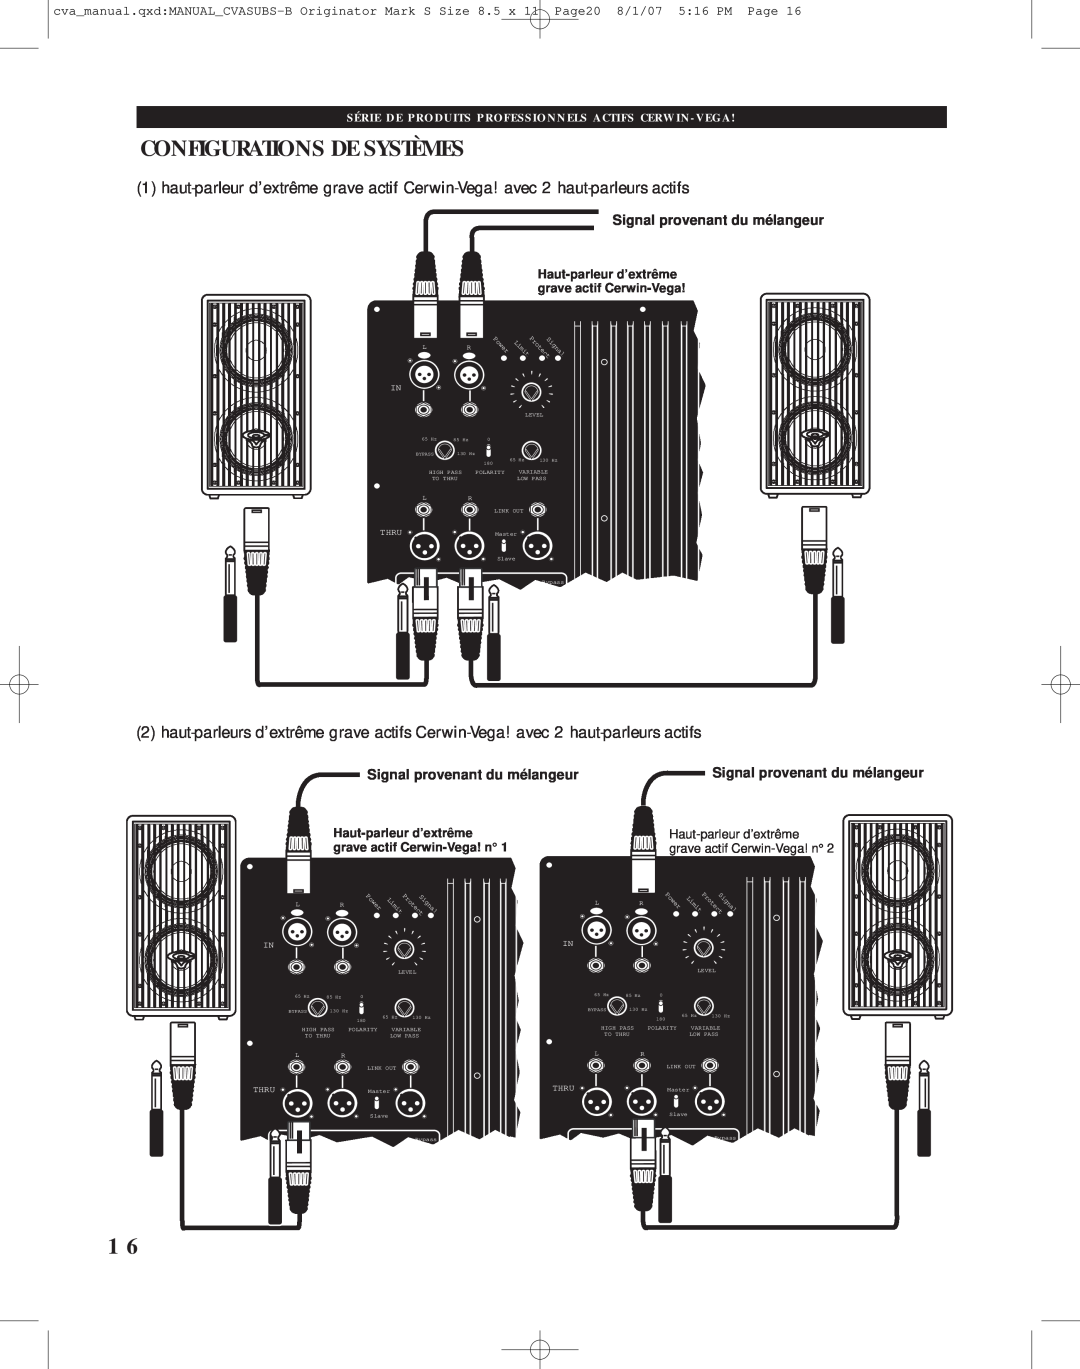 Cerwin-Vega CVA-118, CVA-121 manual Configurations De Systèmes, Signal provenant du mélangeur 